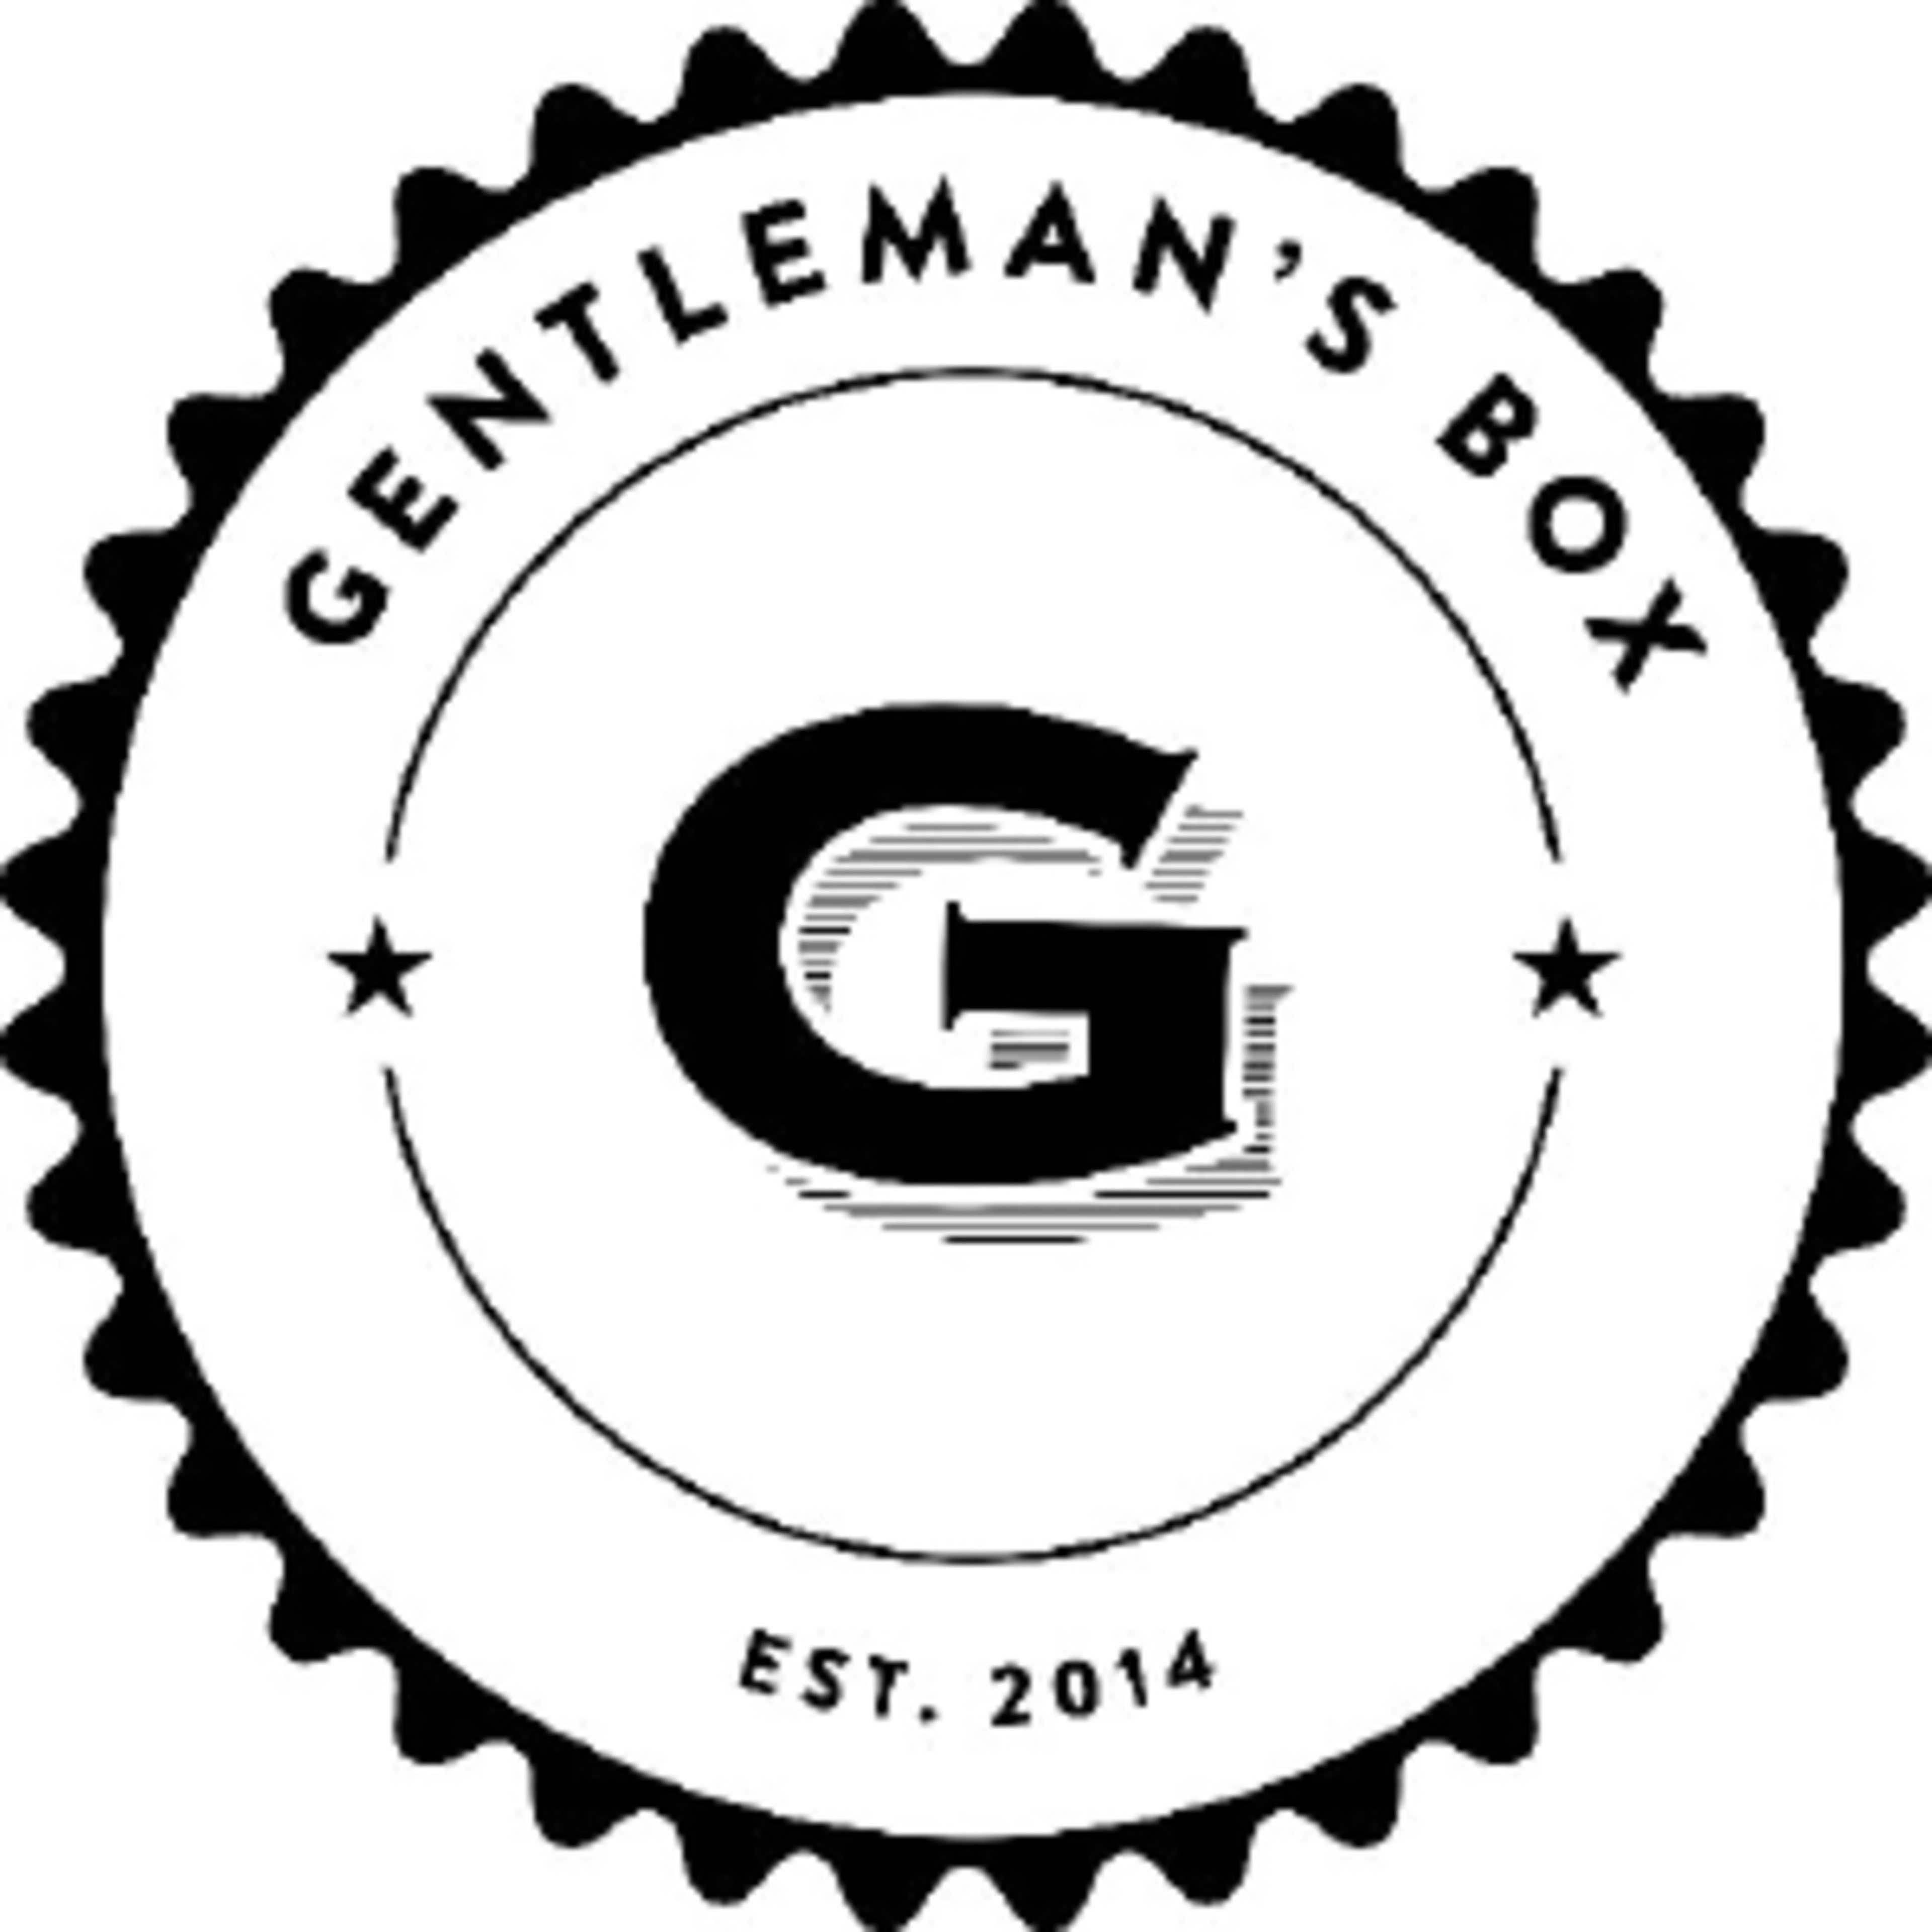 Gentleman's Box Code